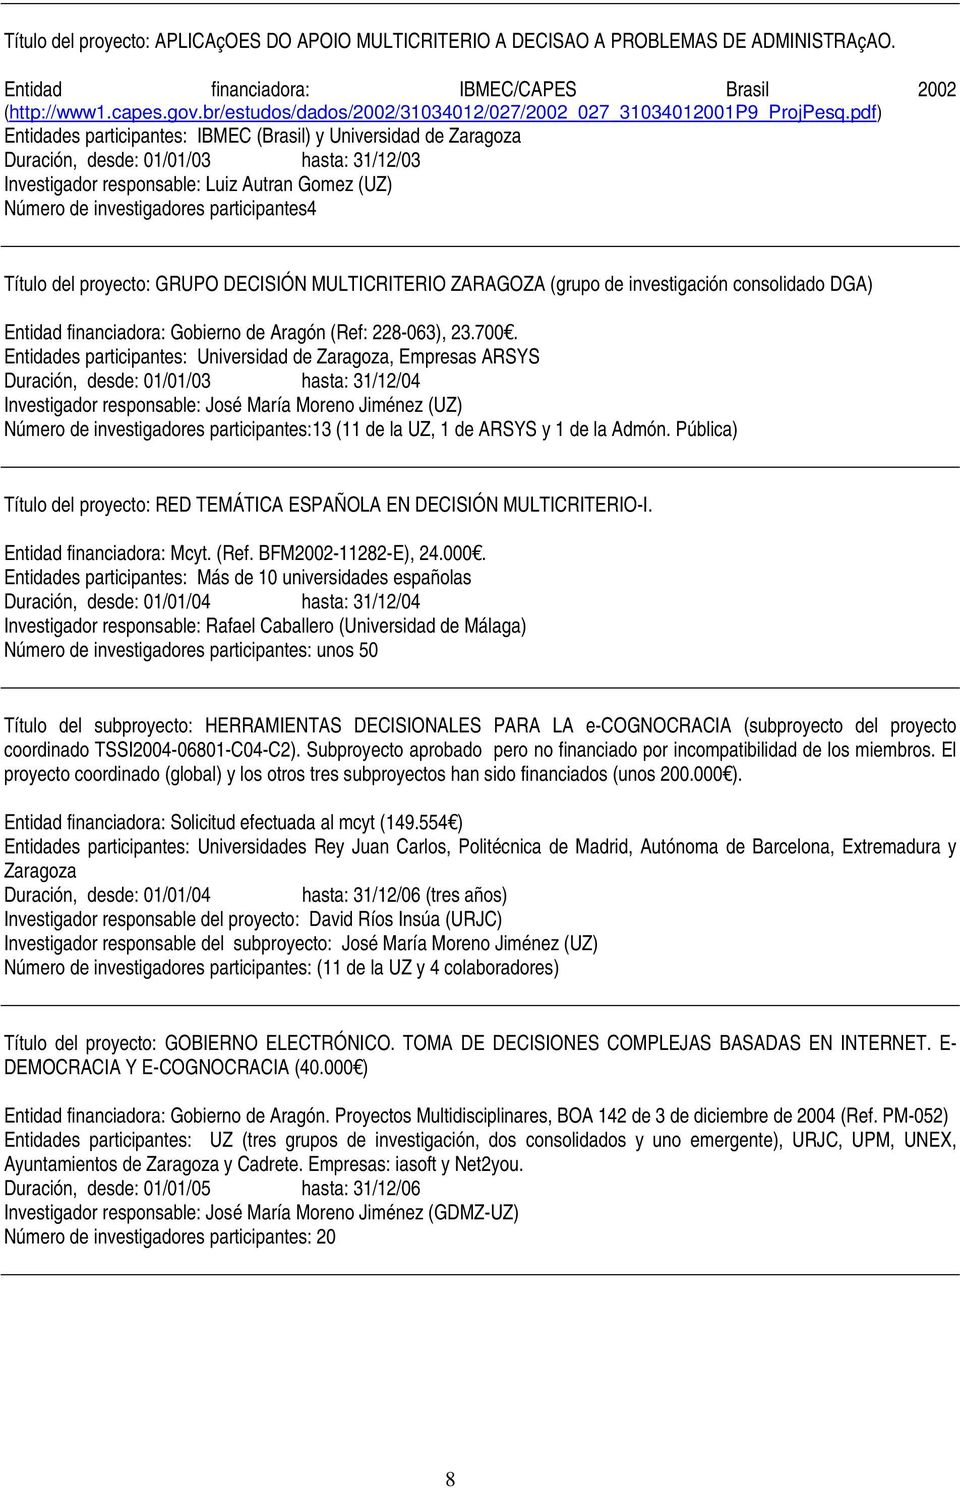 pdf) Entidades participantes: IBMEC (Brasil) y Universidad de Zaragoza Duración, desde: 01/01/03 hasta: 31/12/03 Investigador responsable: Luiz Autran Gomez (UZ) Número de investigadores